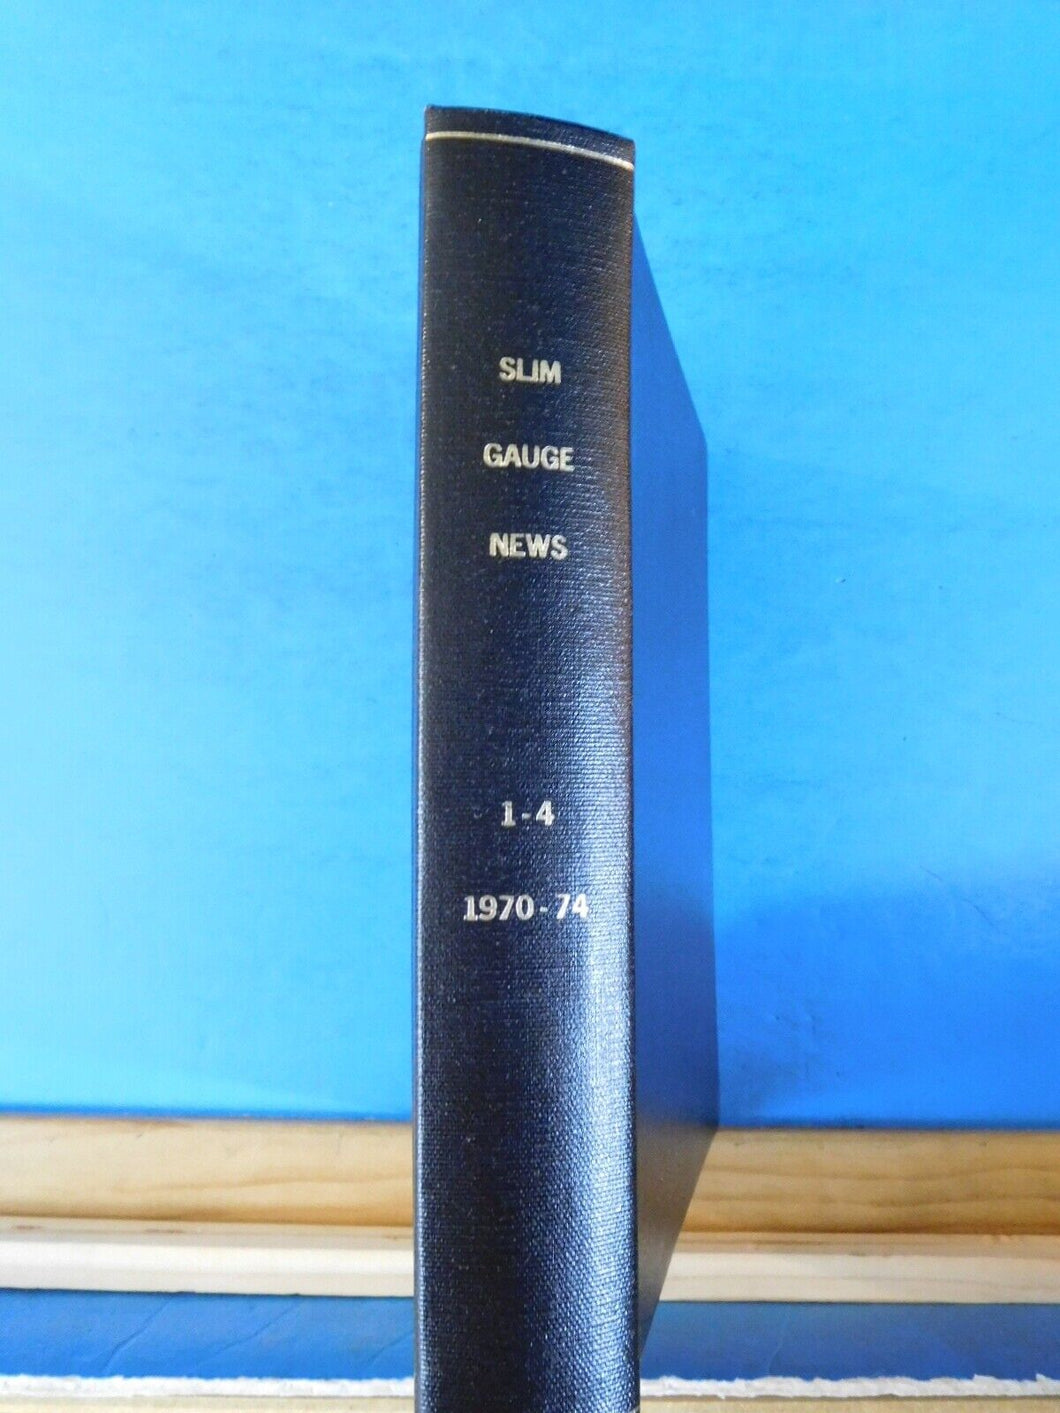 Slim Gauge News Bound Volume 1 - Volume 4 1970-1974  18 issues